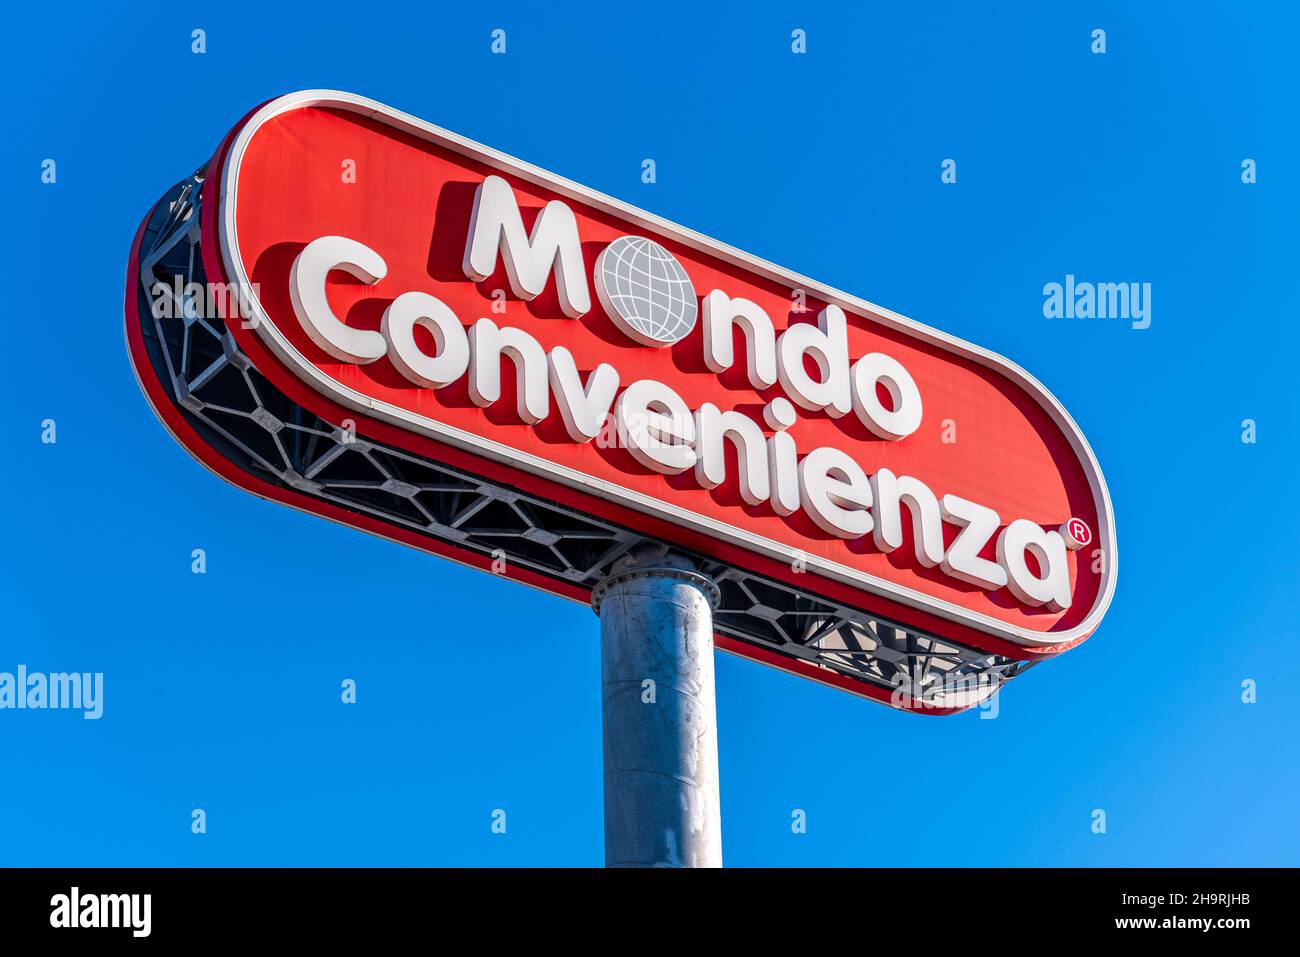 Moncieri, Turin, Italien - 6. Dezember 2021: Großes Schild mit Logo von Mondo Convenienza Store auf blauem Himmel, ist es italienische Firma großen Vertrieb von Stockfoto